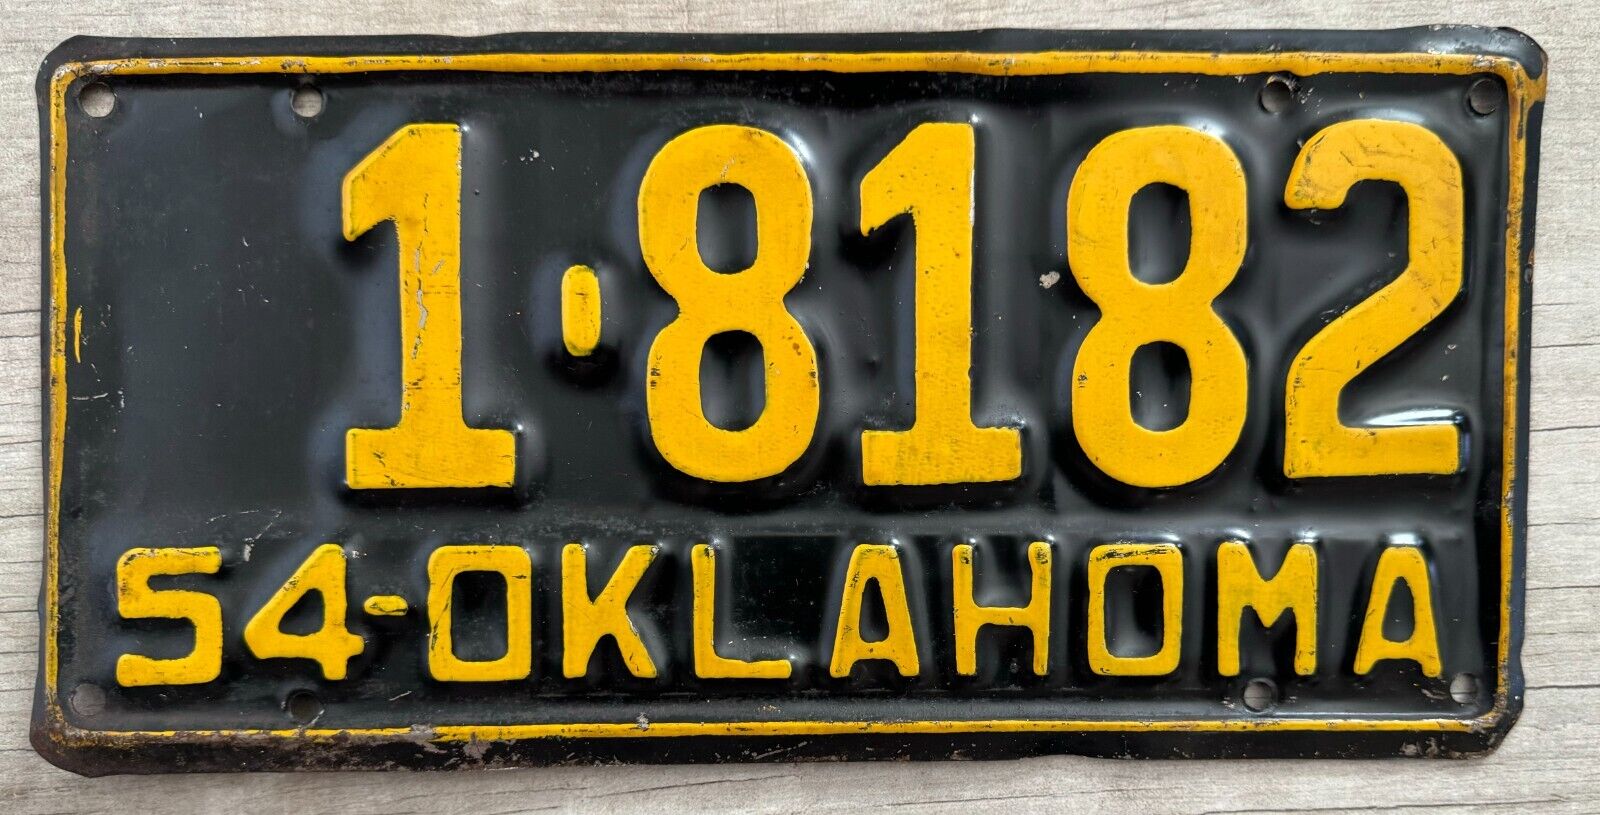 1954 Oklahoma License Plate - Nice Original Paint